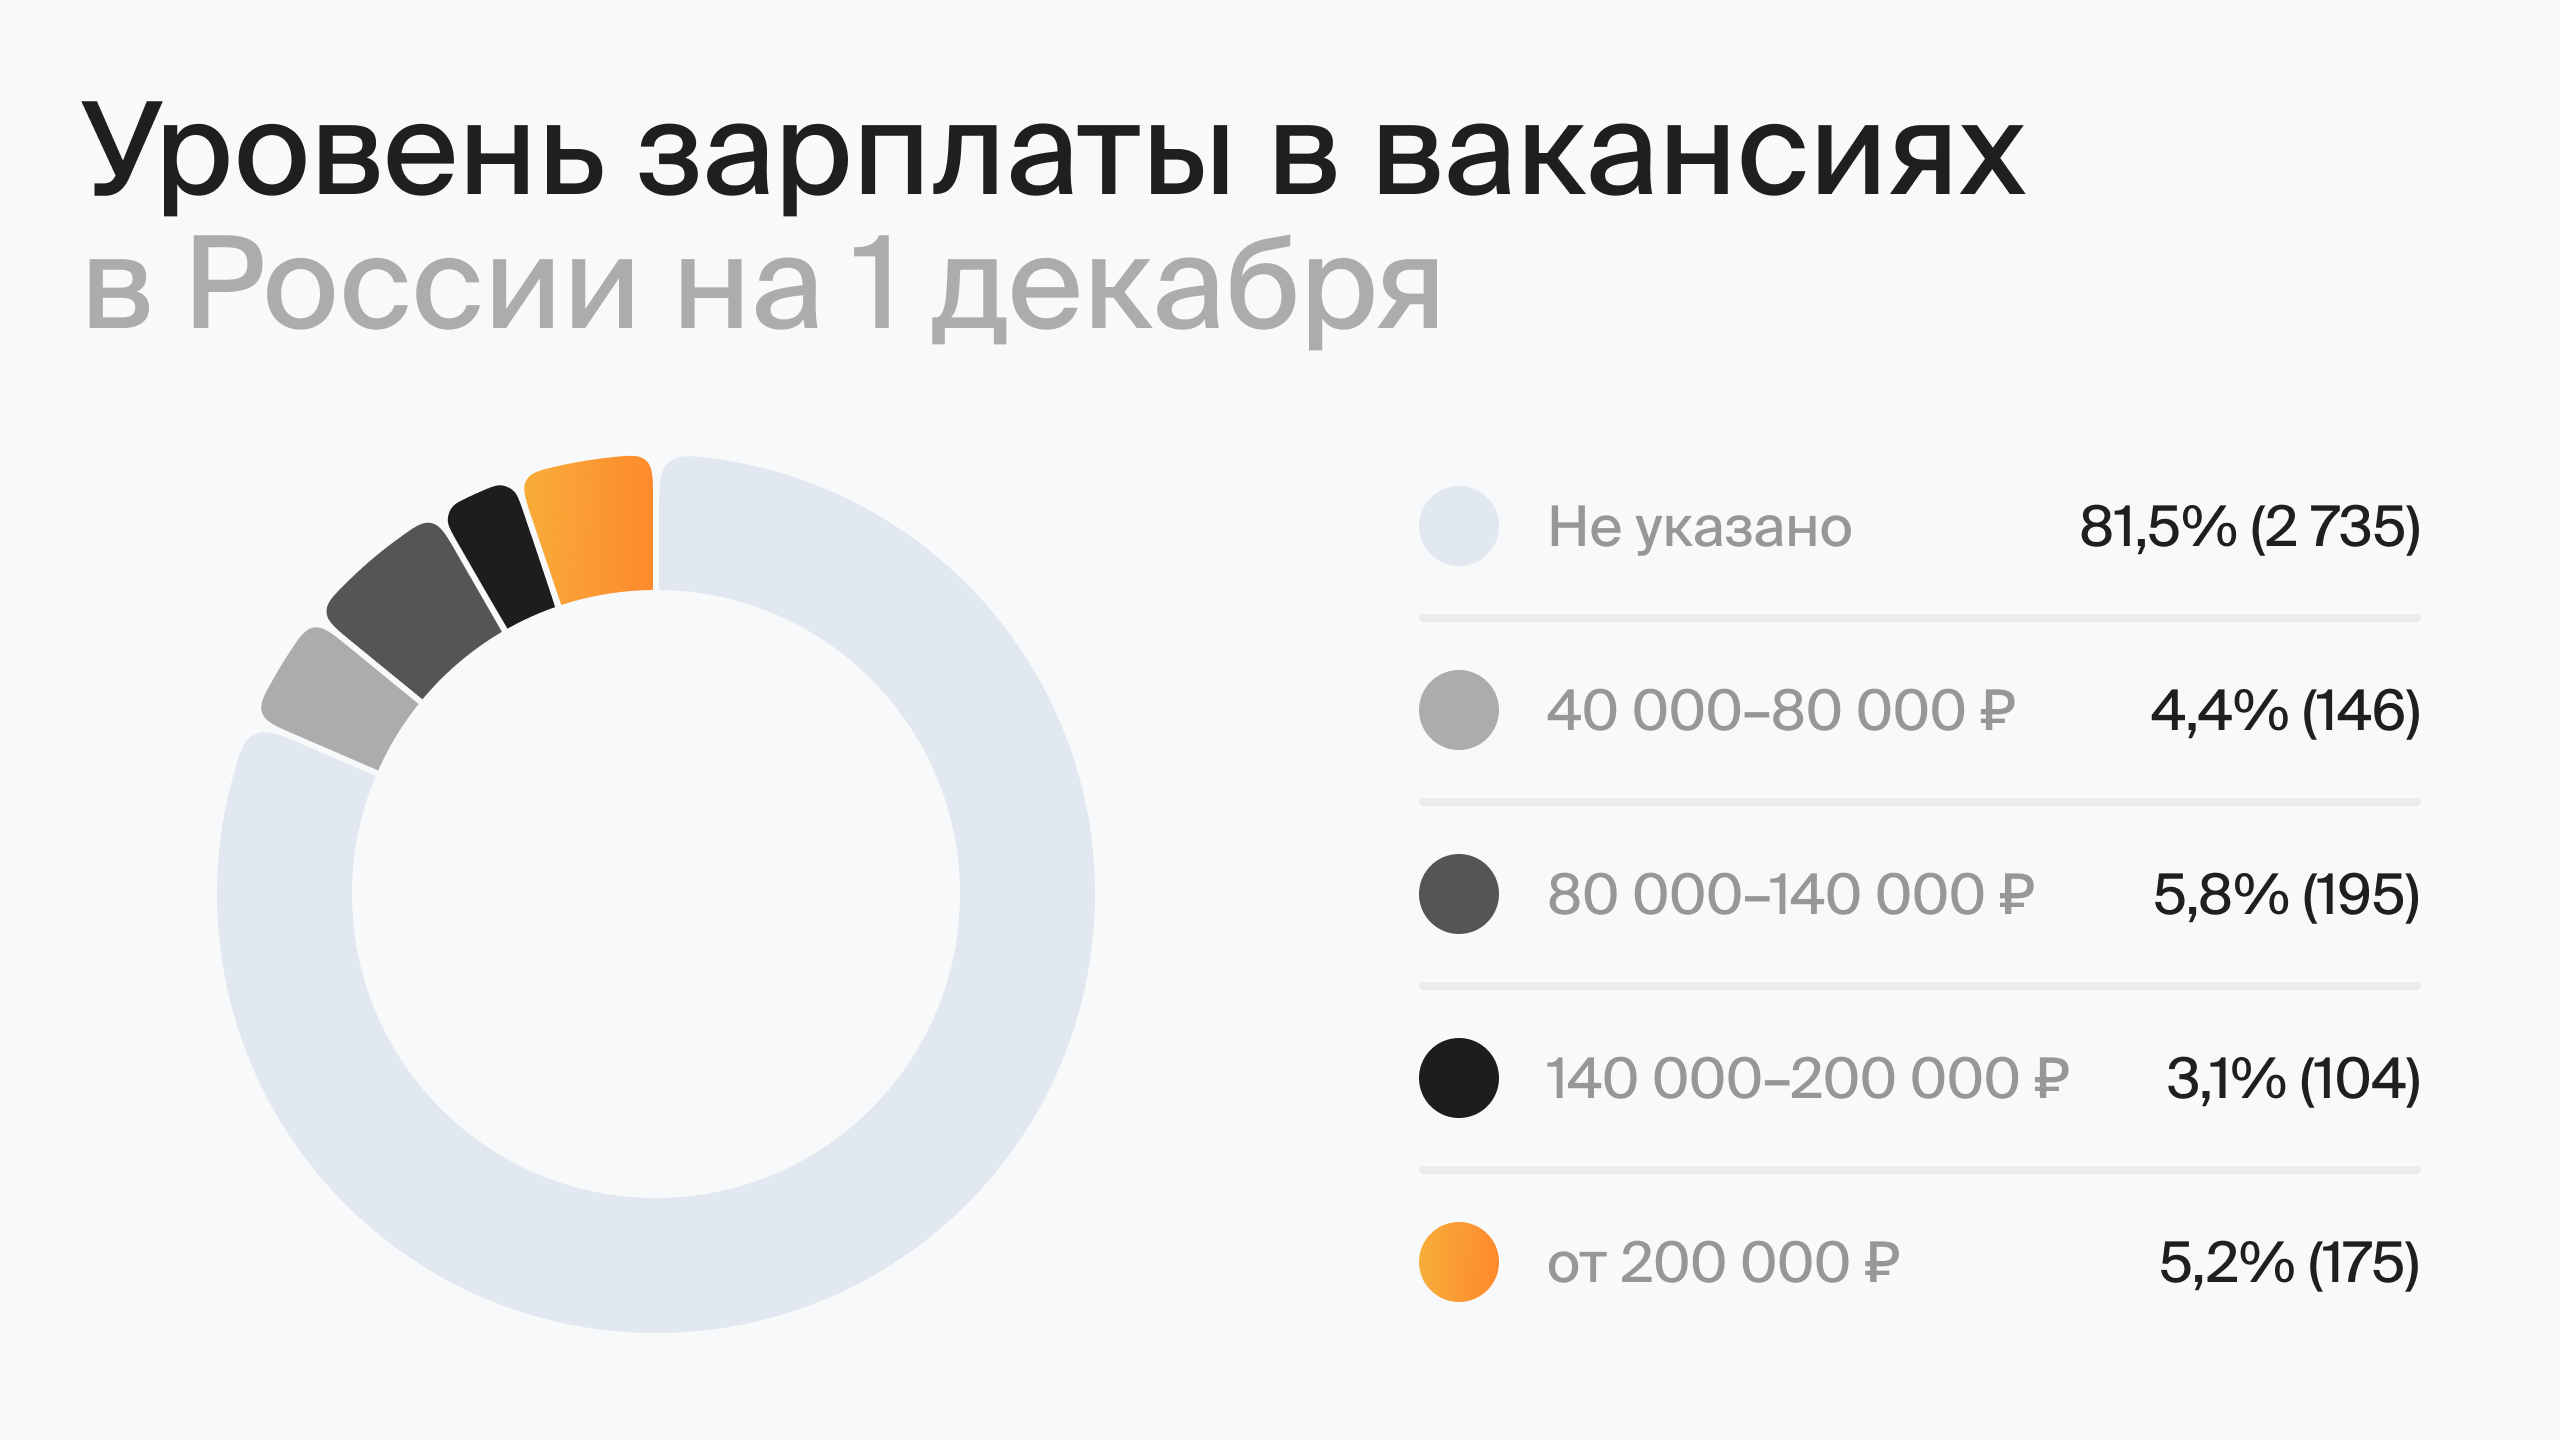 Уровень зарплаты в вакансиях в России на 1 декабря (по данным hh.ru)